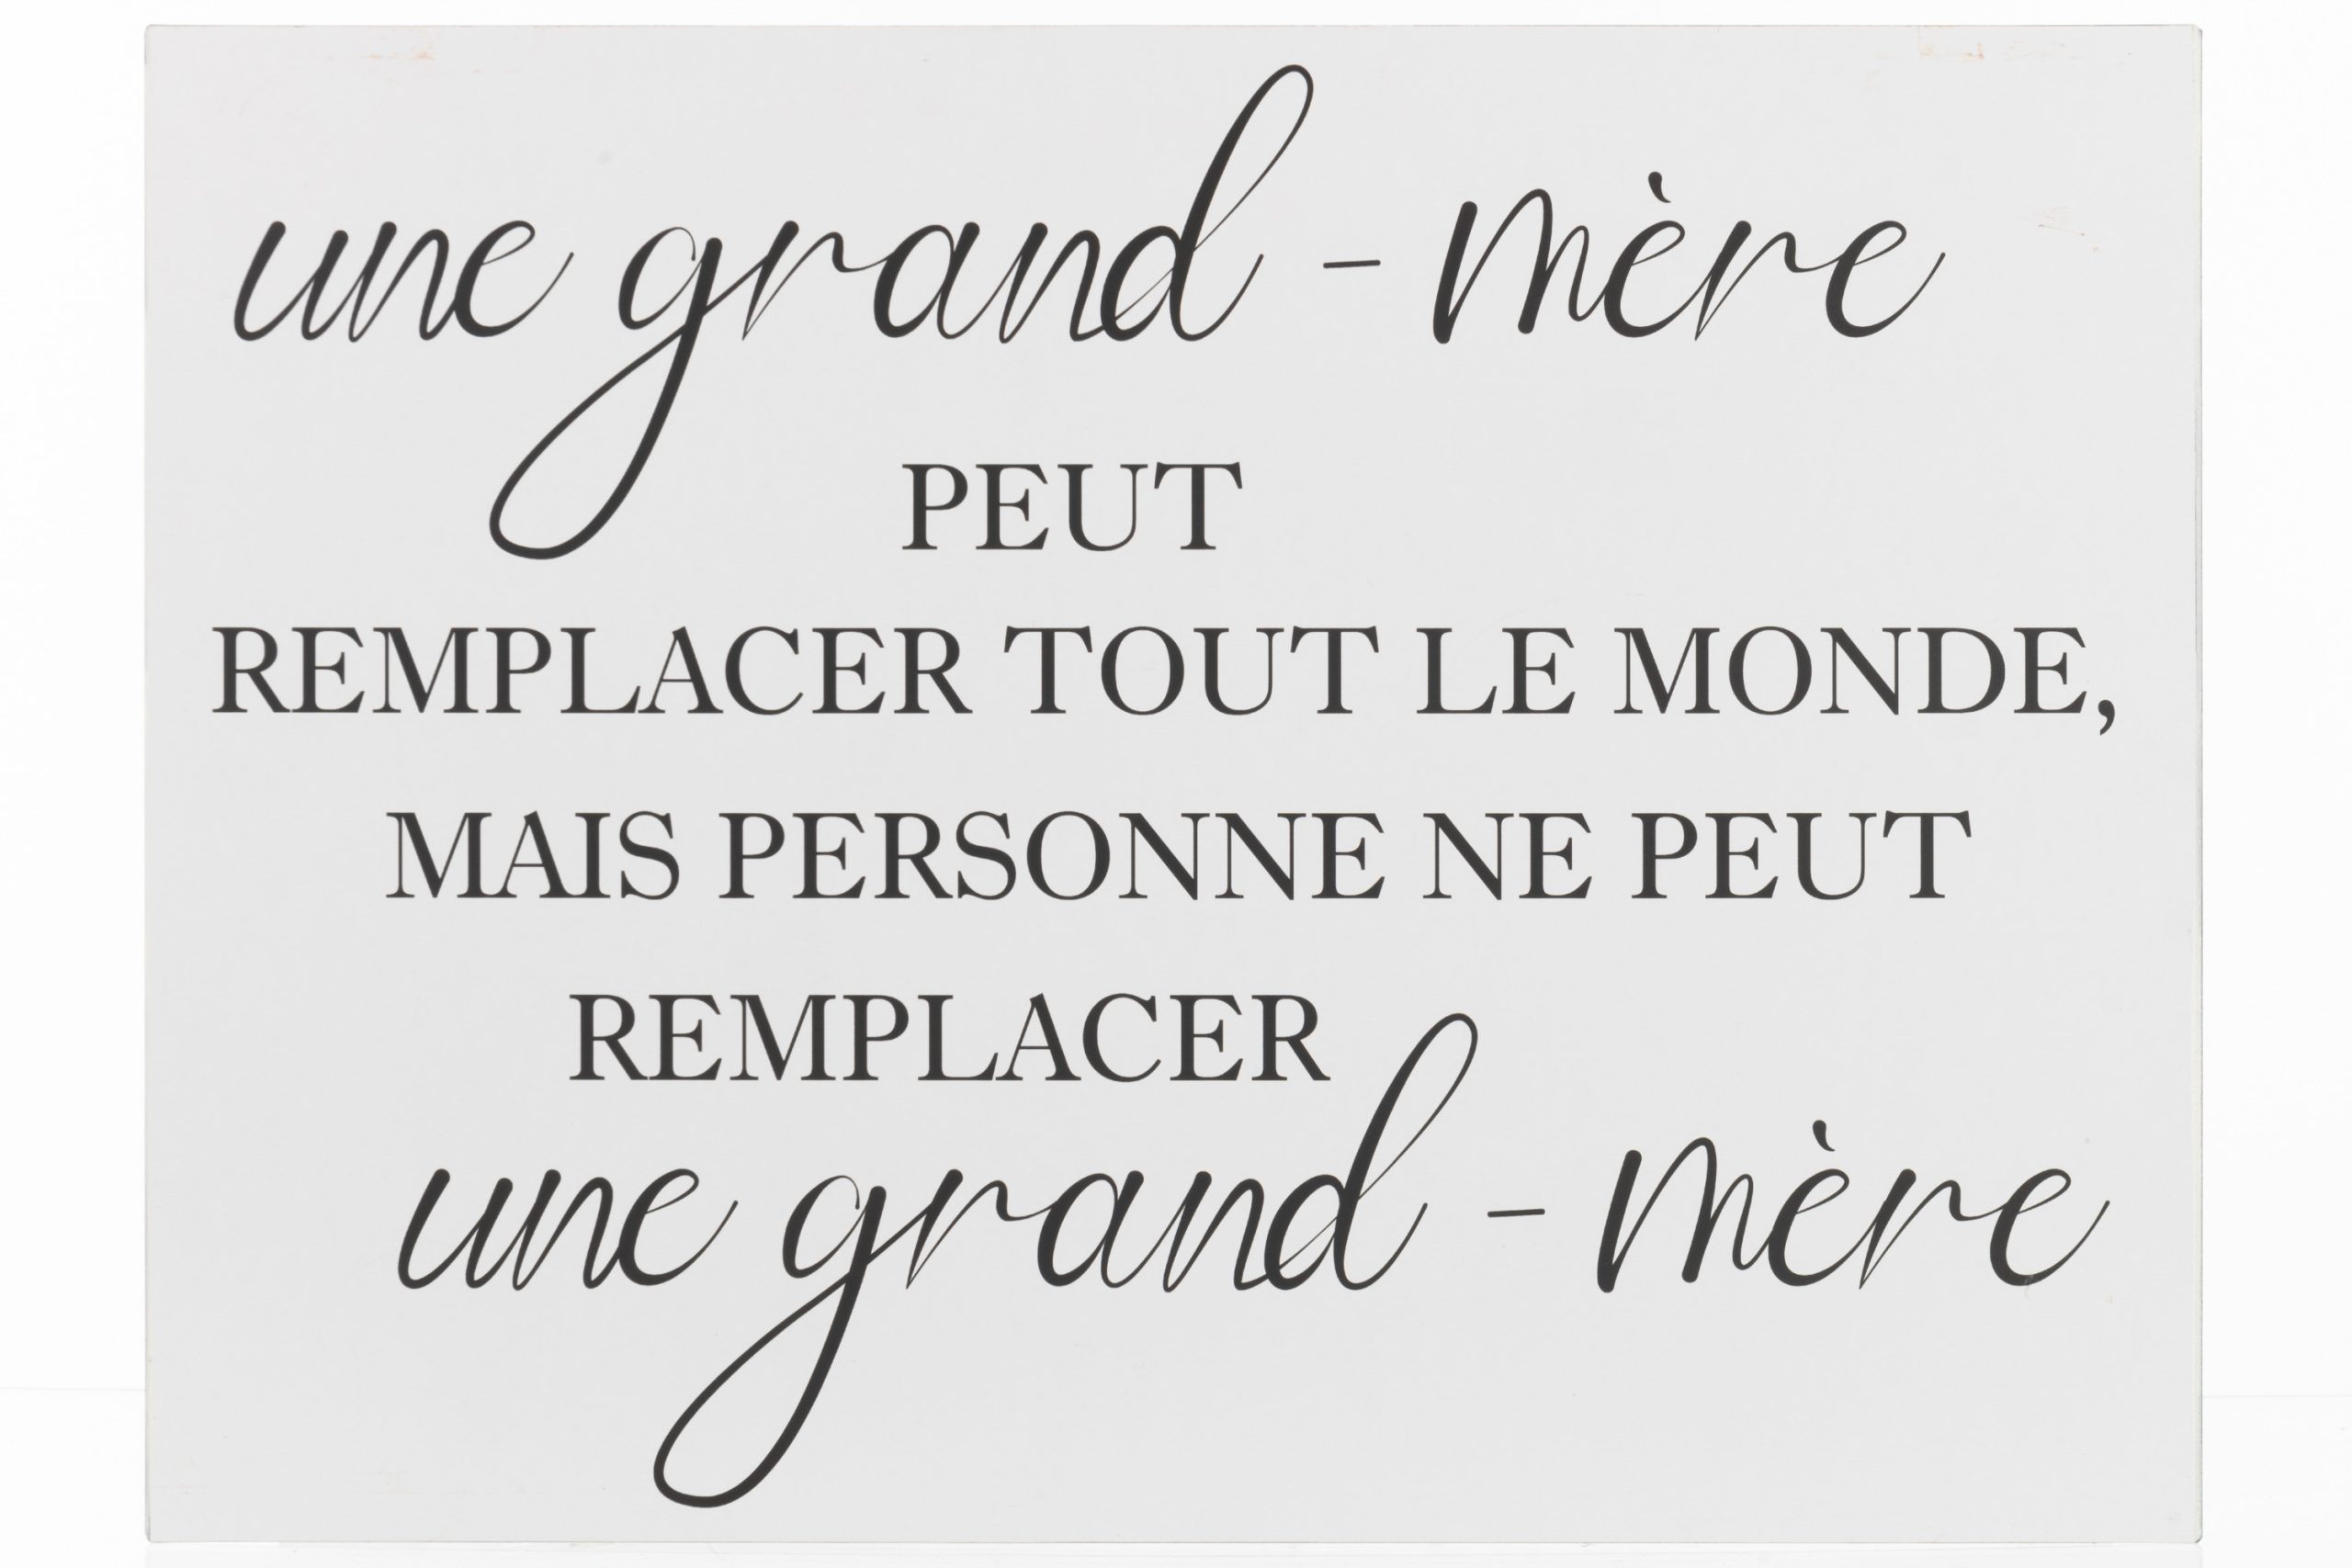 Pancarte Texte Français Grand Mère Métal Blancnoir La Cadrerie Wavre 